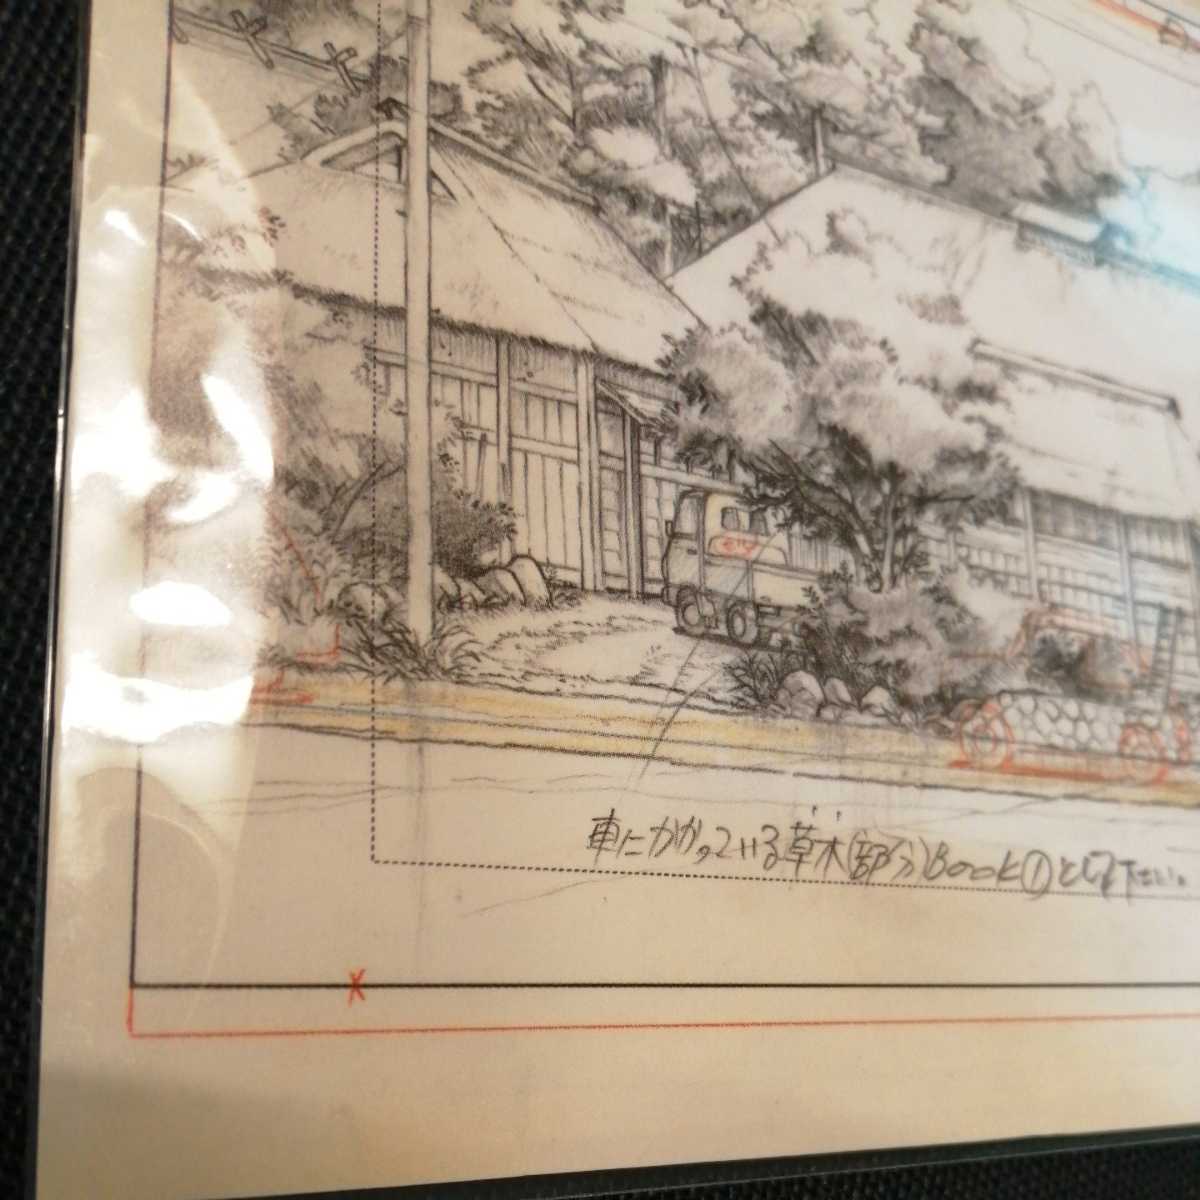  Studio Ghibli ........ расположение порез . осмотр ) Ghibli открытка постер исходная картина цифровая картинка расположение выставка Miyazaki .w